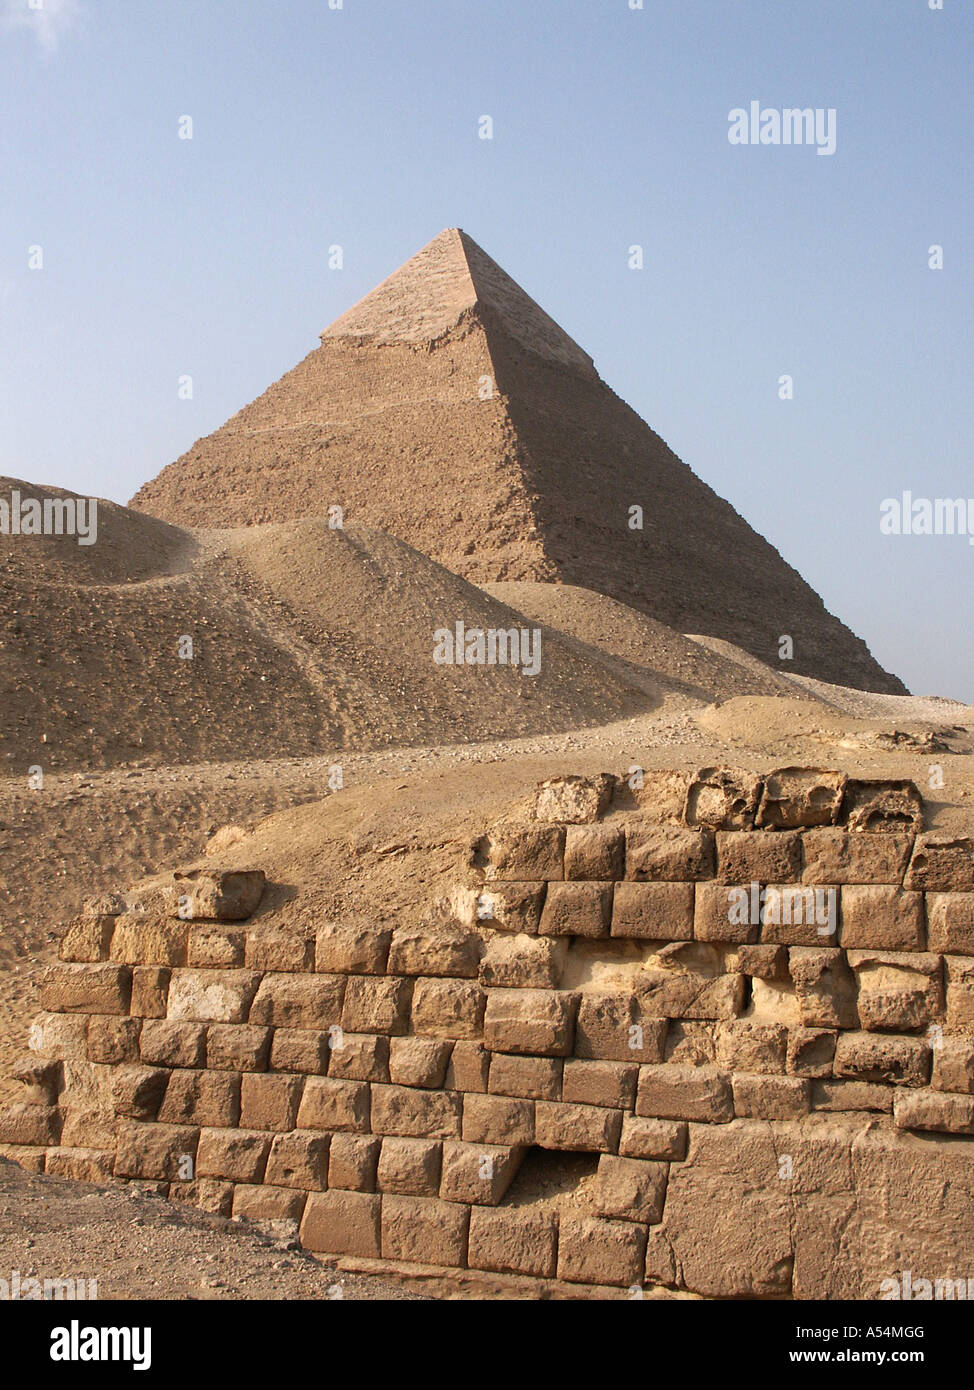 Painet ip1665 Ägypten Pyramiden Gizeh 2002 Land Kultur der Nation weniger ökonomisch entwickelt neue Märkte entwickeln Stockfoto